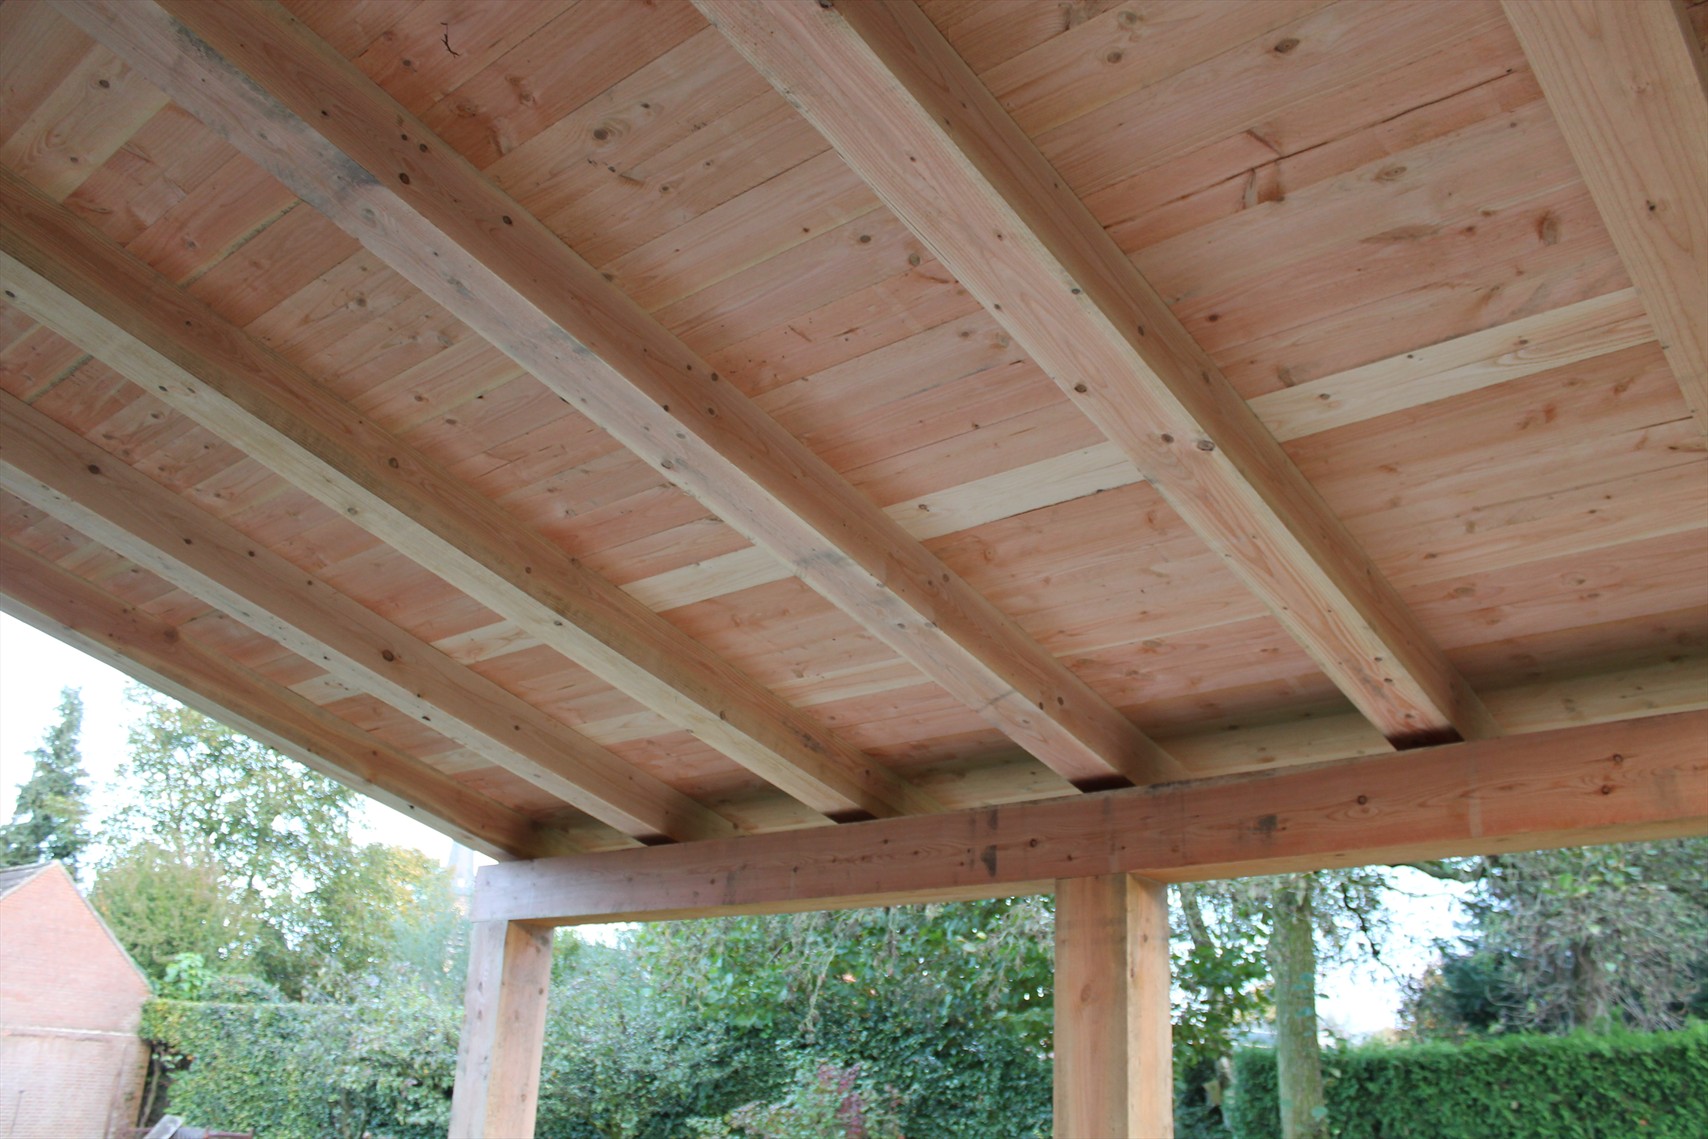 ouder bijtend Stewart Island Douglas Overkapping plat dak tegen gevel 4 x 3,5m | Online Veranda Shop